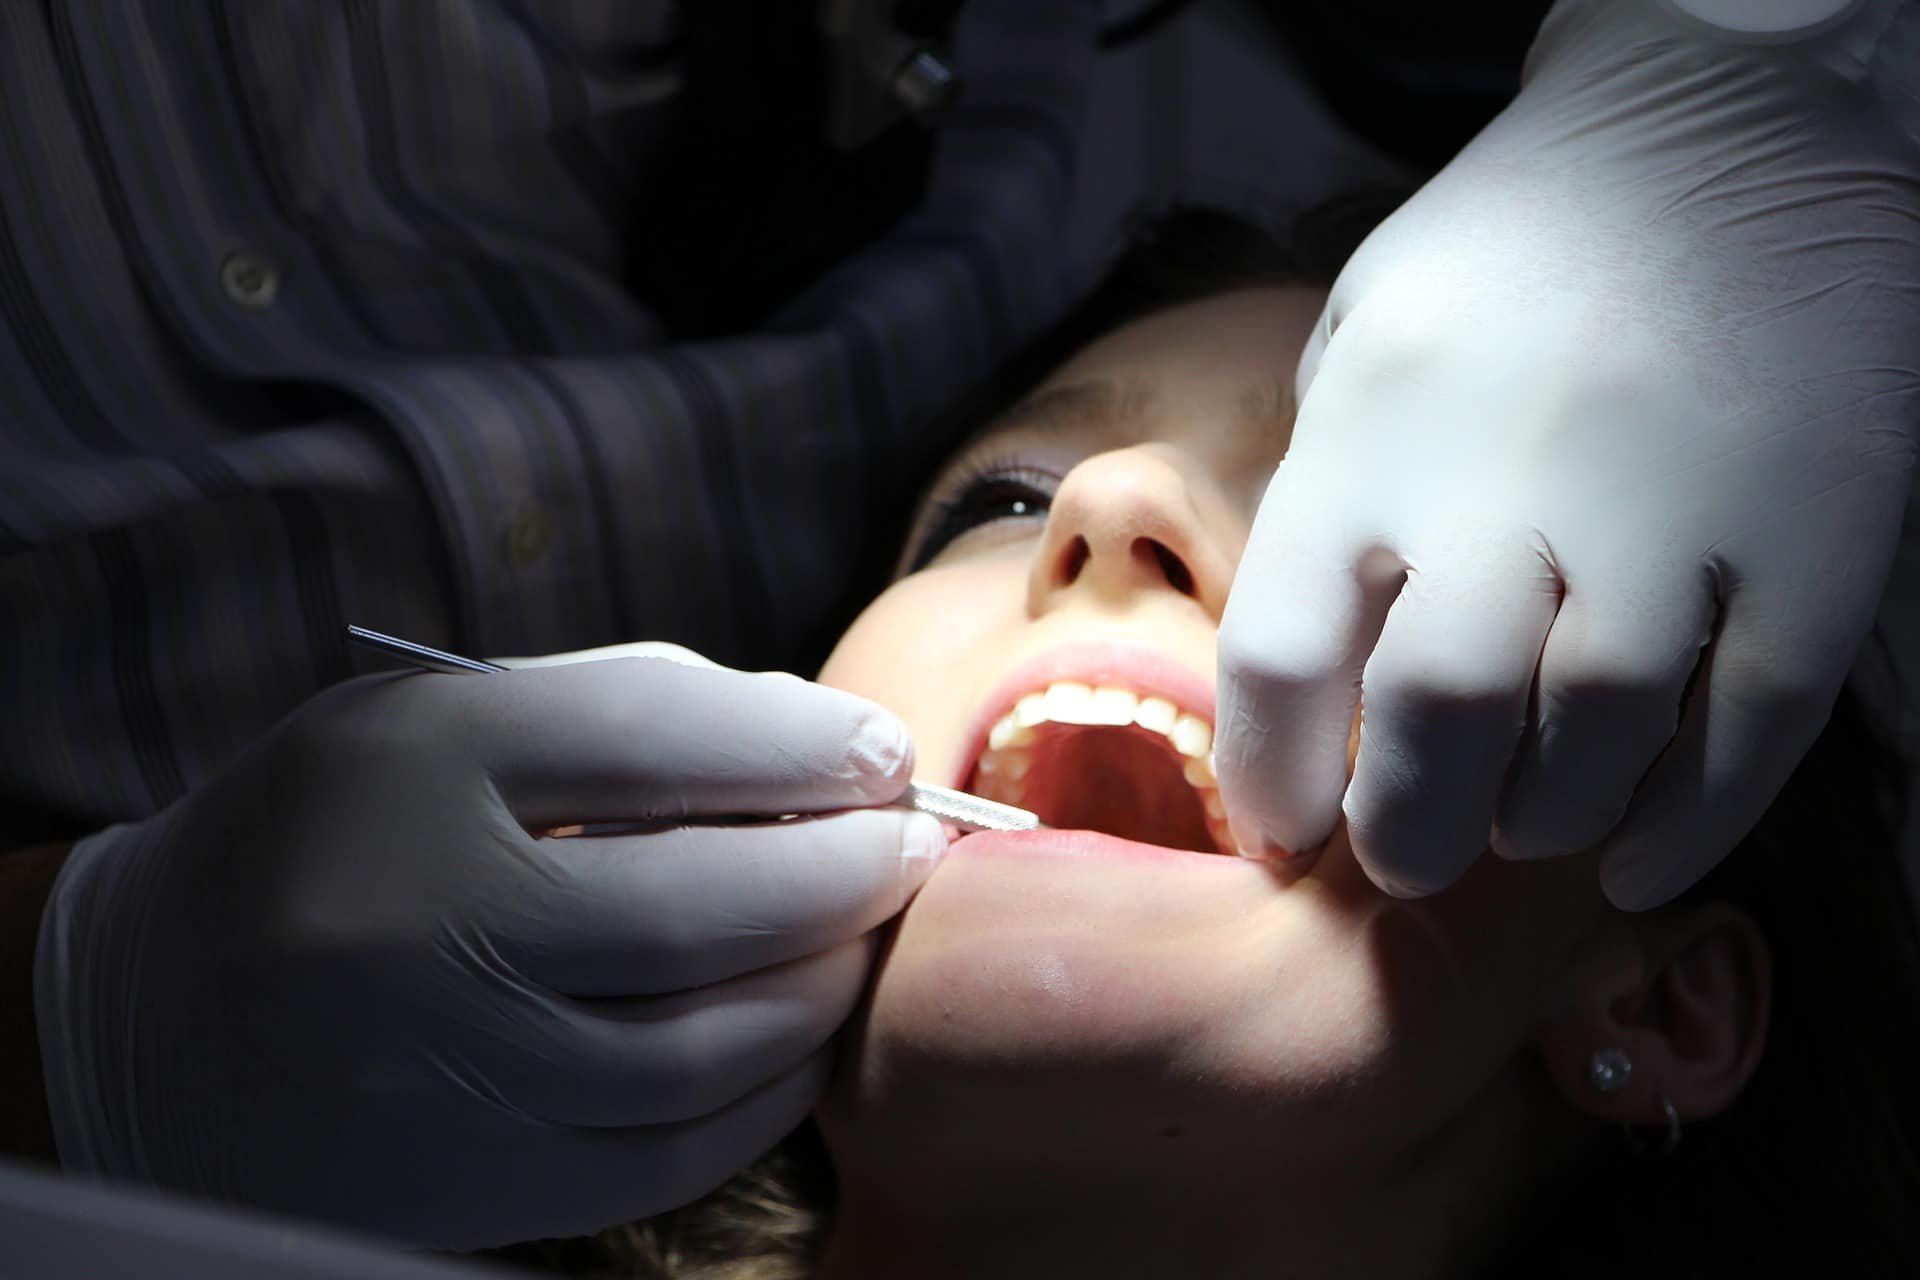  Dureri dentare, urmate de procese: o pacientă de la Dentesse a apelat la judecători ca să-şi obţină datele sale medicale